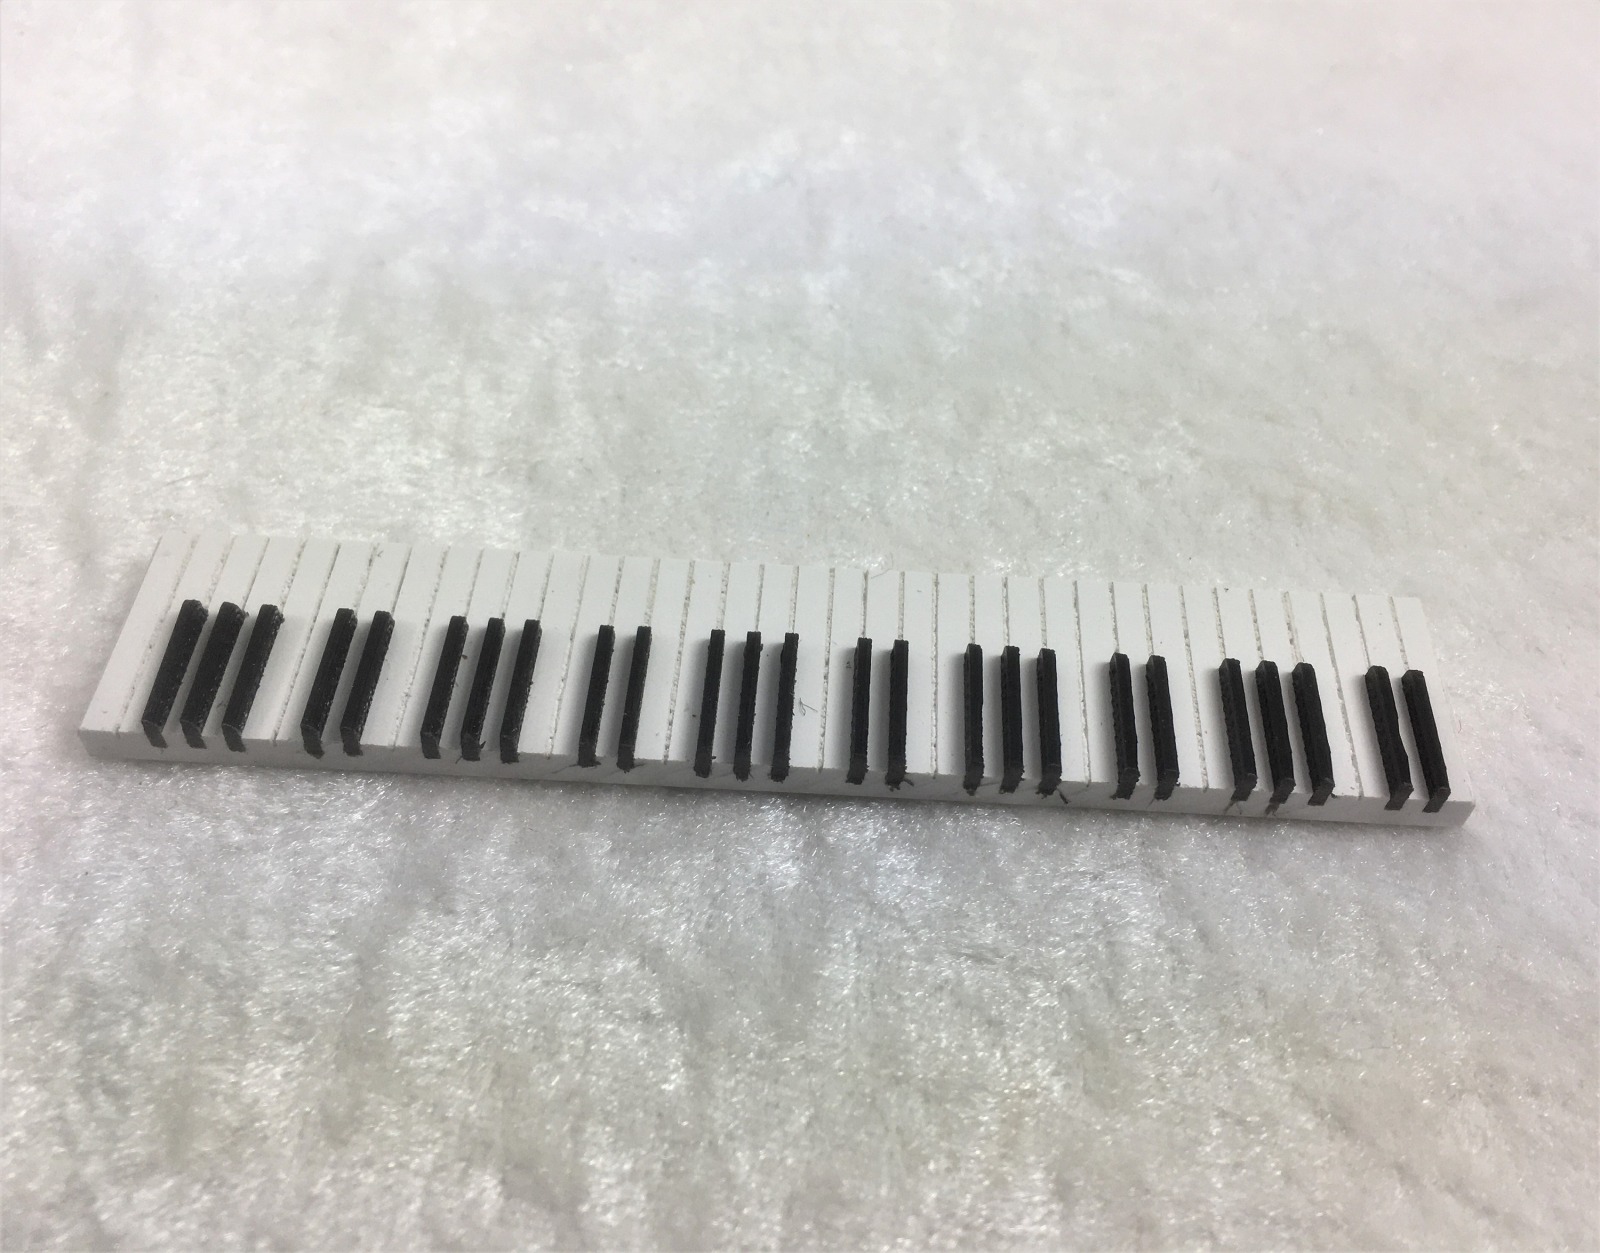 Klaviertastatur Pianotastatur Orgeltastatur zum einbauen in ihr eigenes hergestelltes Instrument